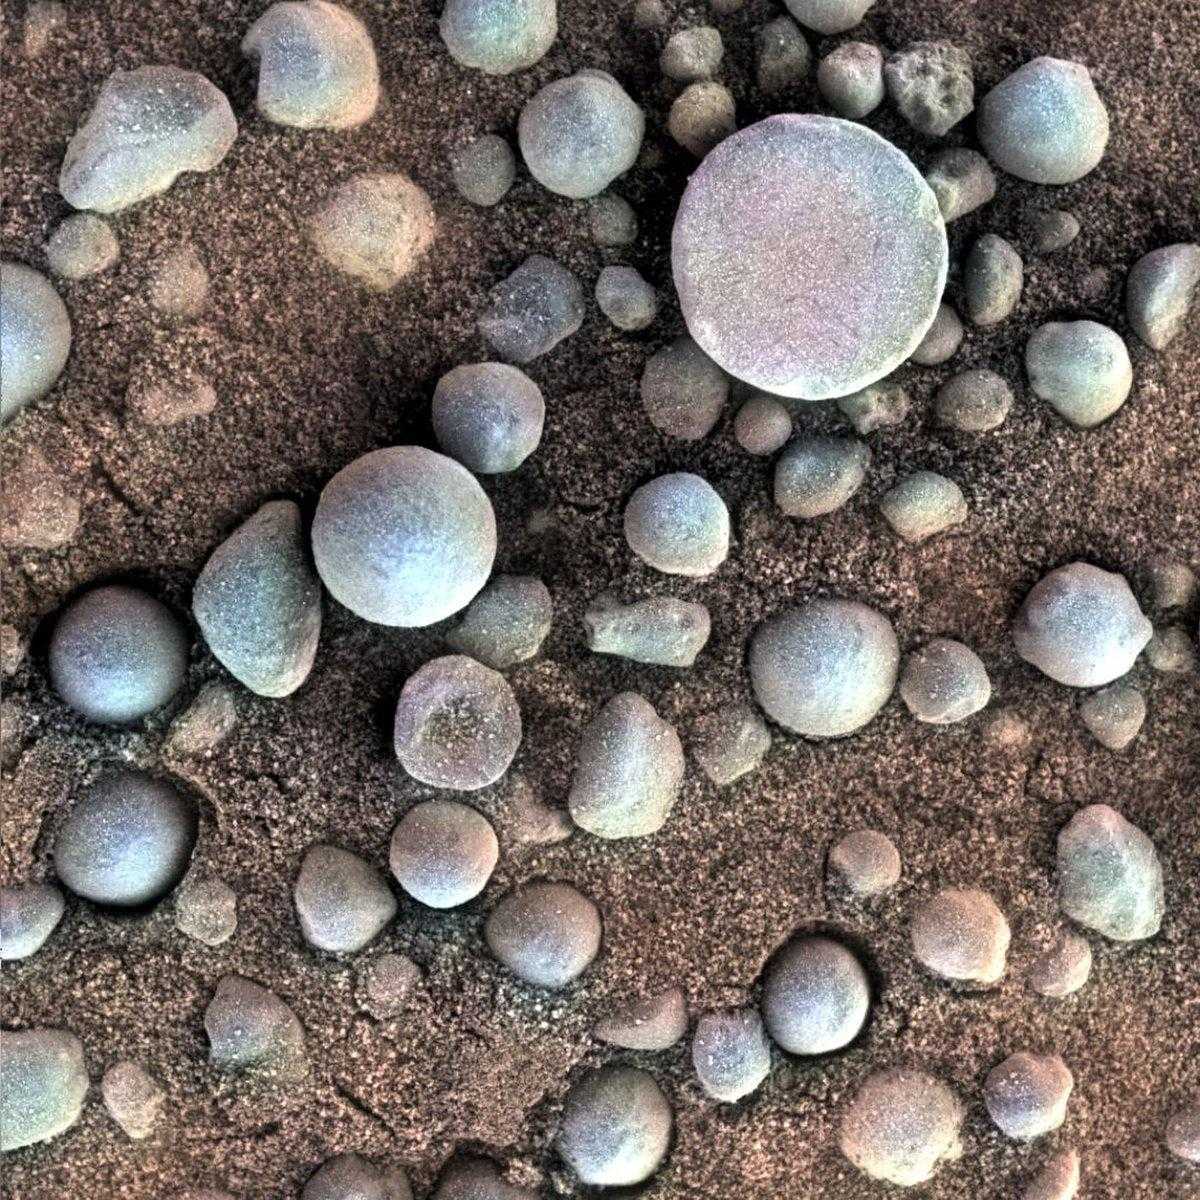 Mars-Opportunity-blueberries-hematite-Fram-Crater